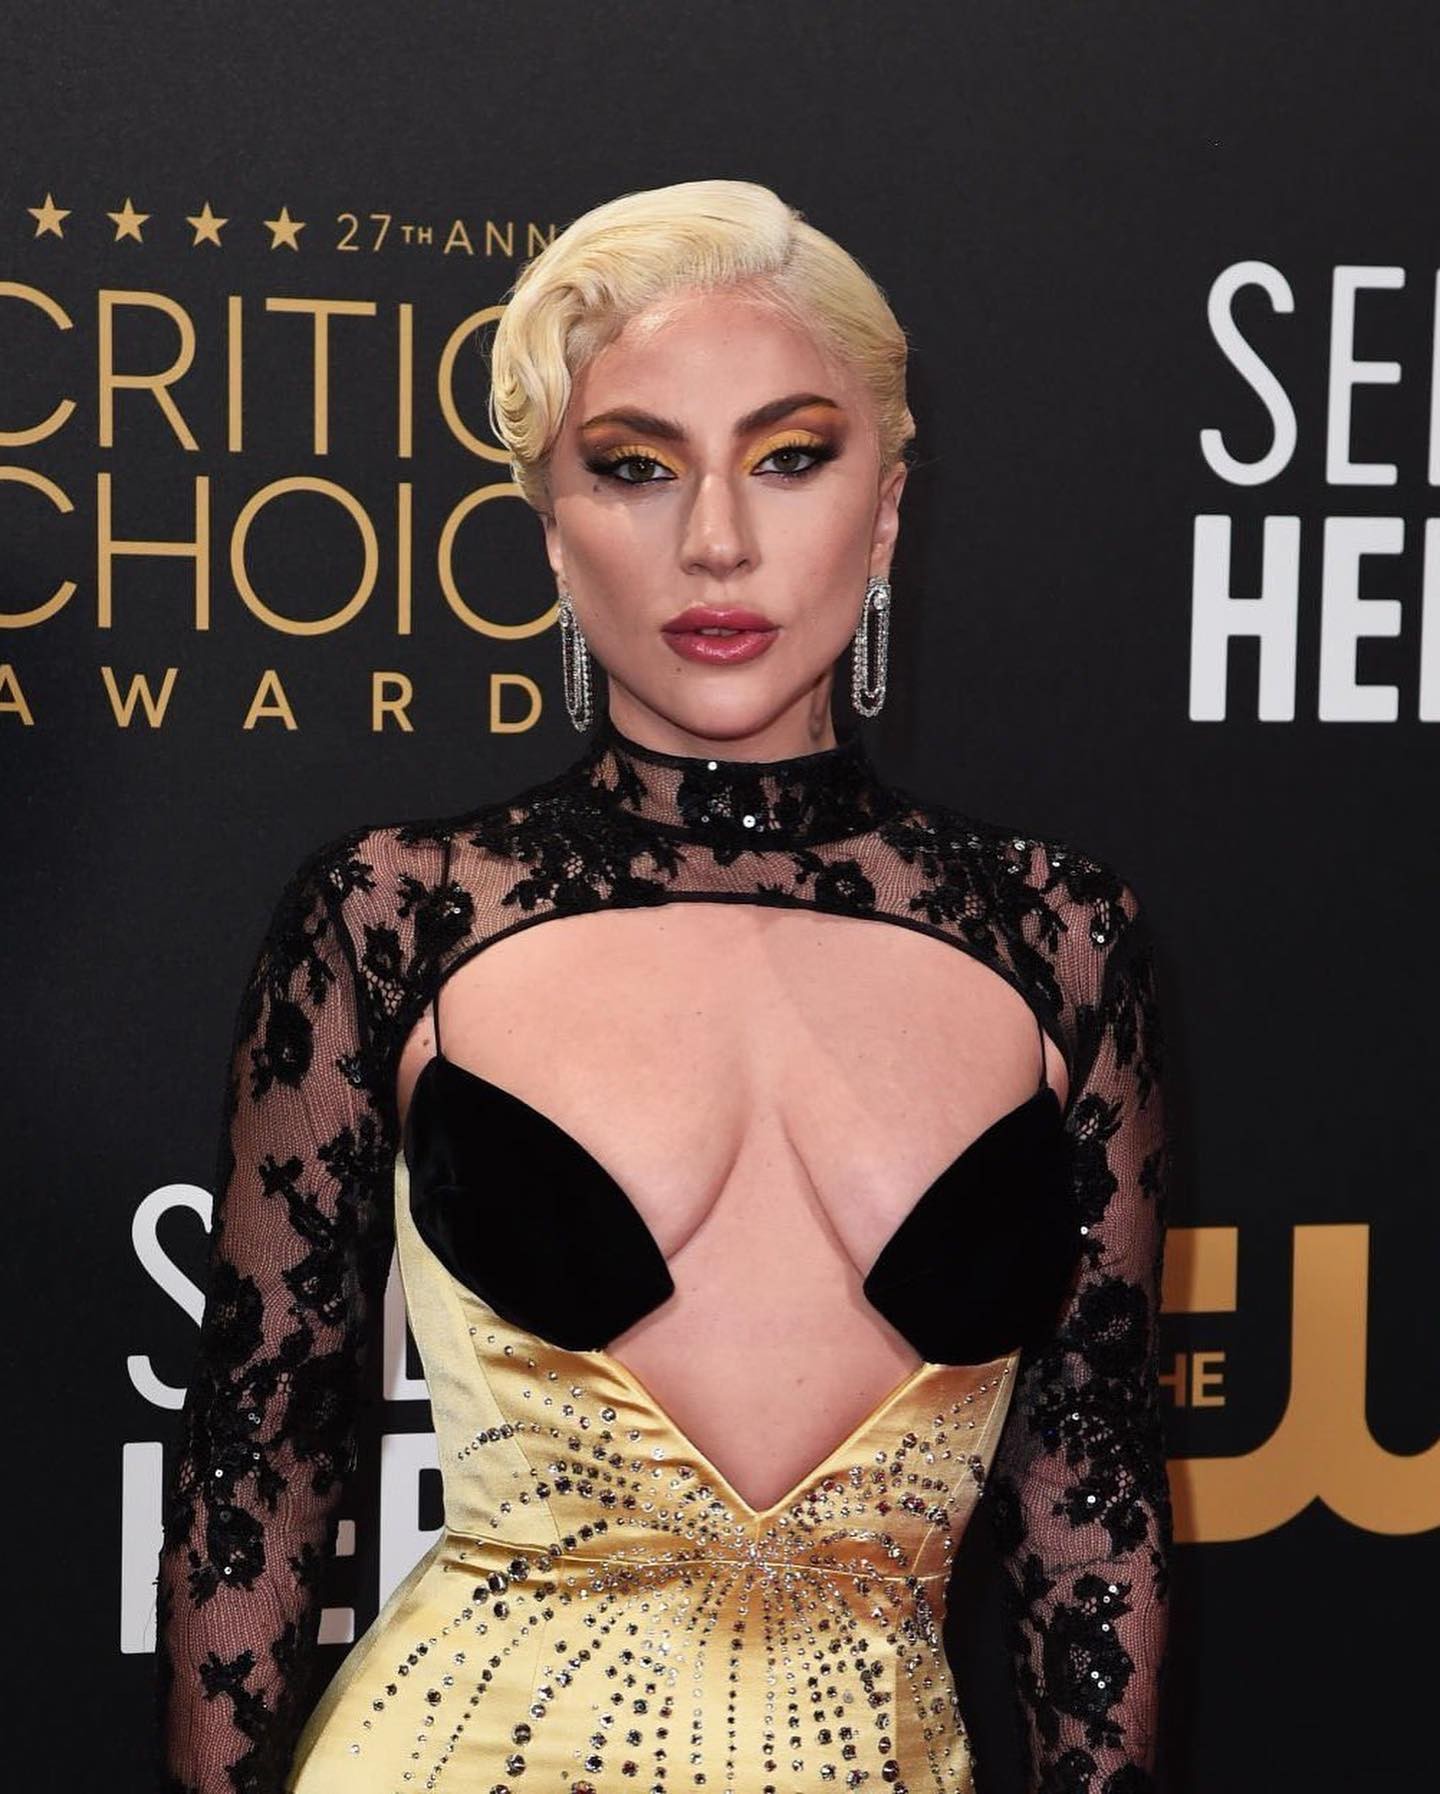 Lady Gaga Tits TheFappening.Pro 2 - Lady Gaga Big Tits At The Critics Choice Awards (7 Photos)